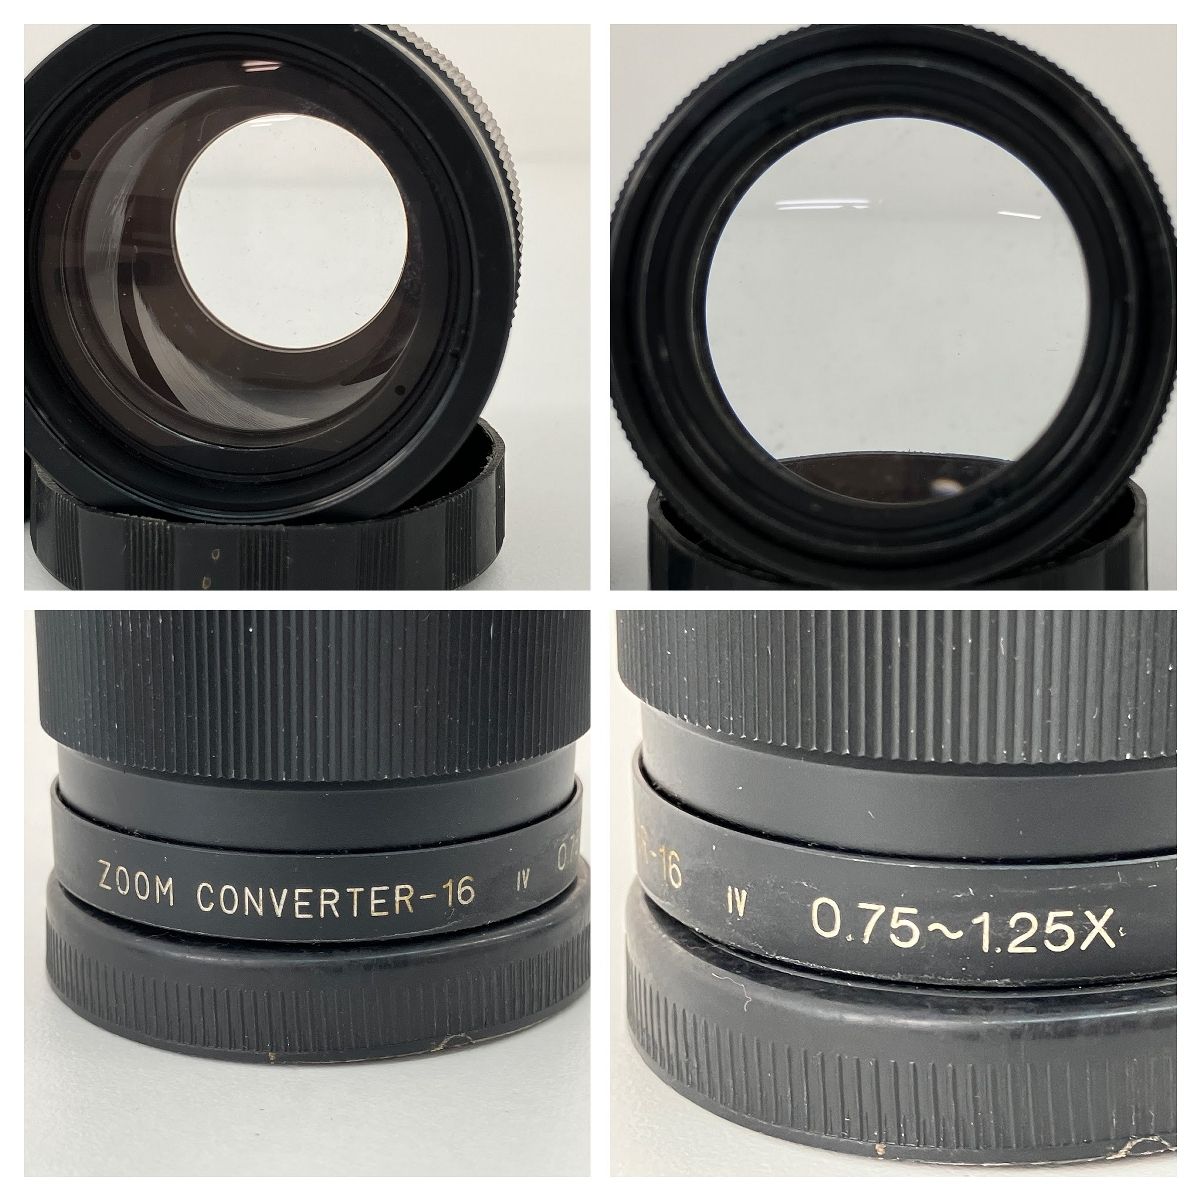 EIKI ZOOM CONVERTER-16 0.75-1.25x レンズ 2個セット 映写機 アクセサリー ジャンク Z8980686 - メルカリ